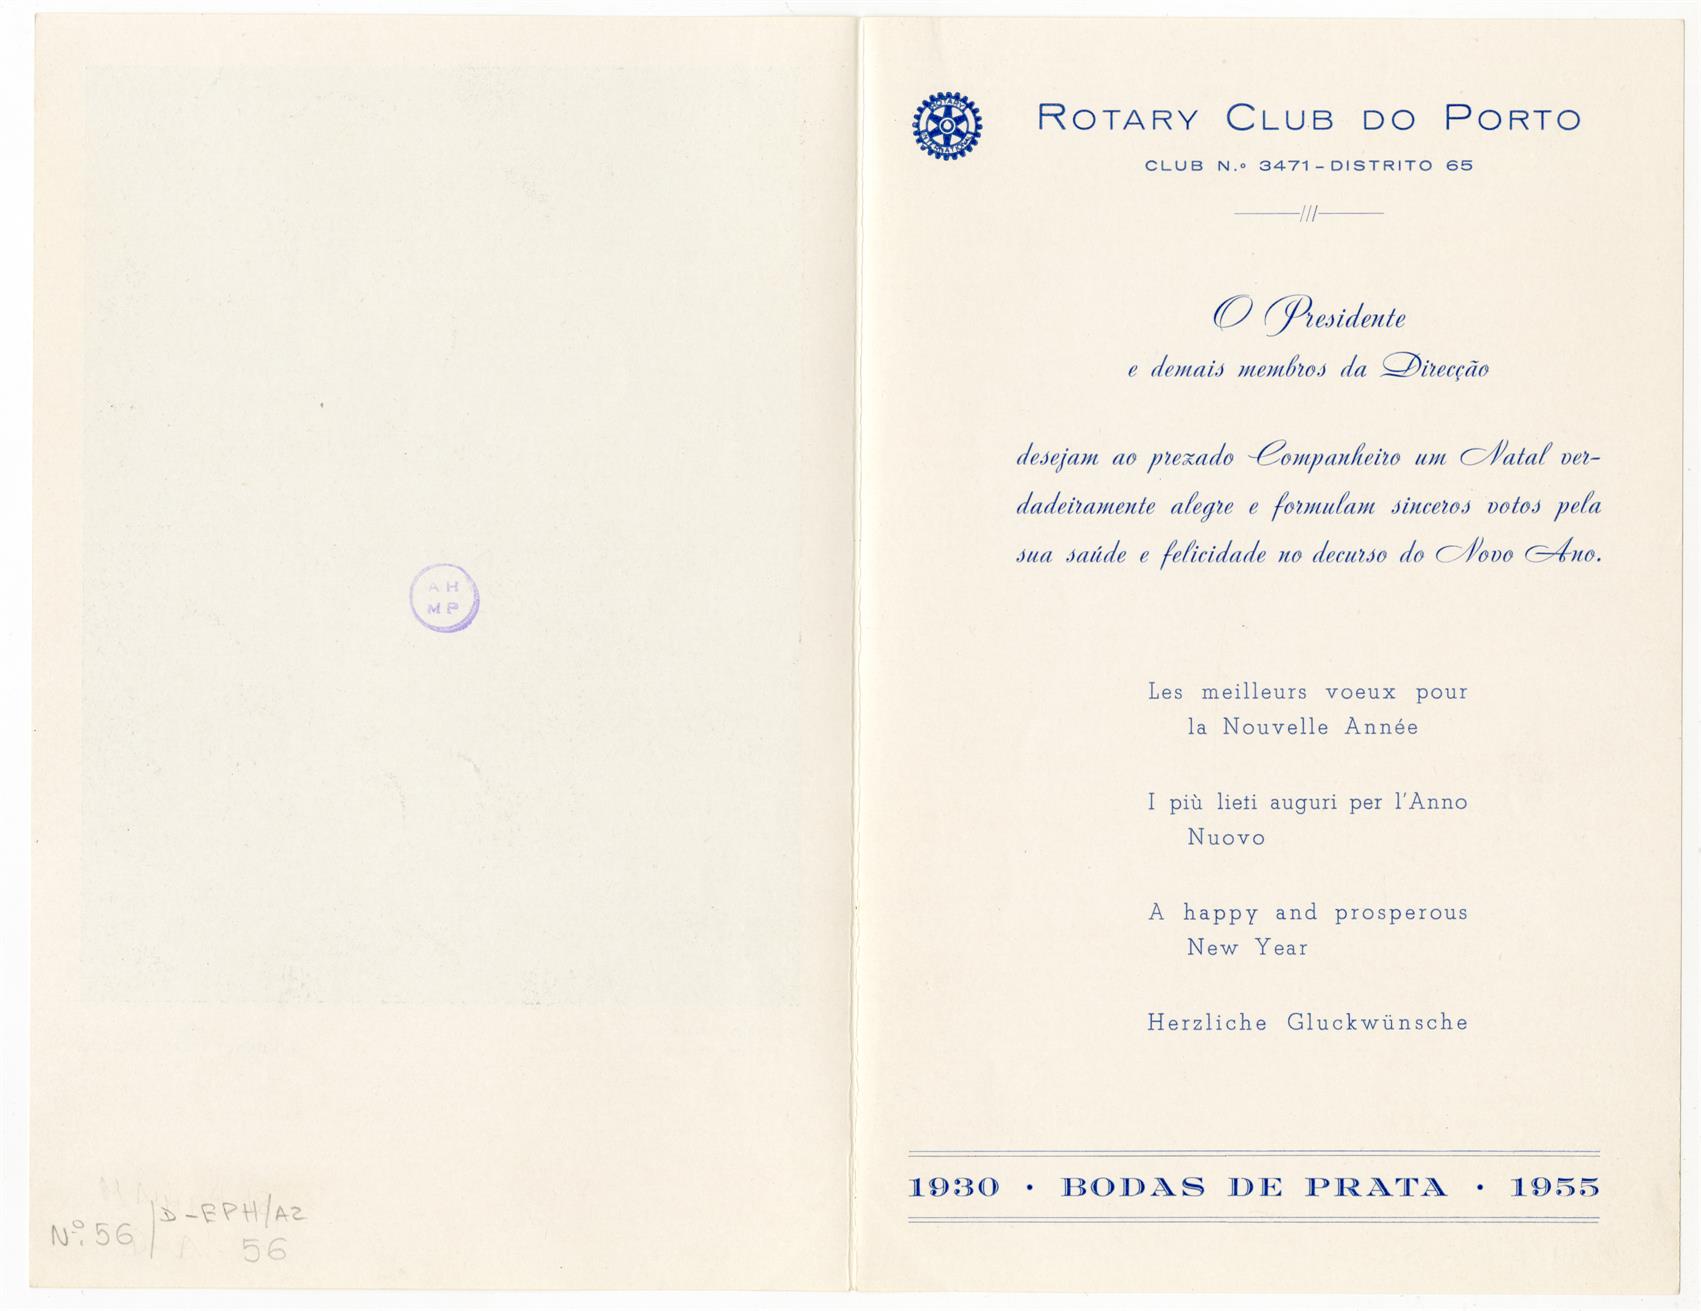 Rotary Club do Porto